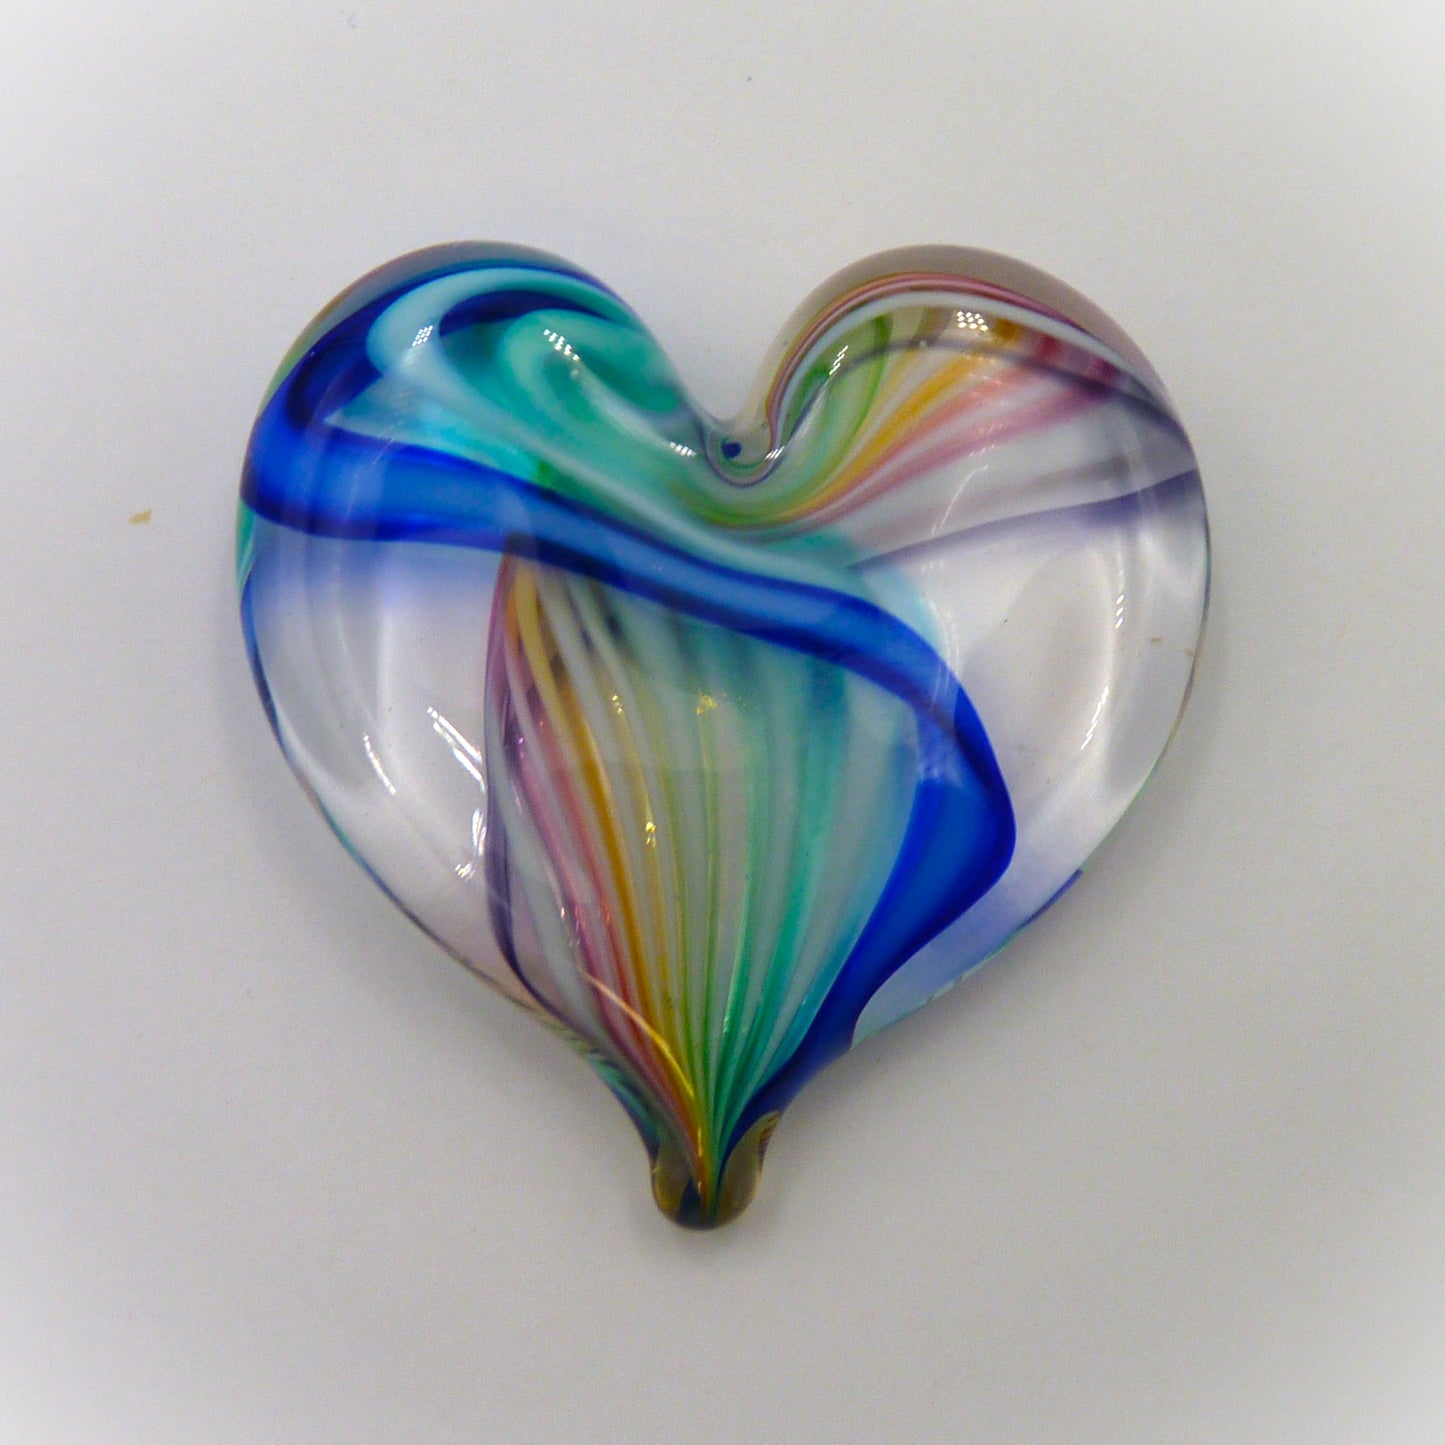 Fritz Heart Small Multi Colored Swirl